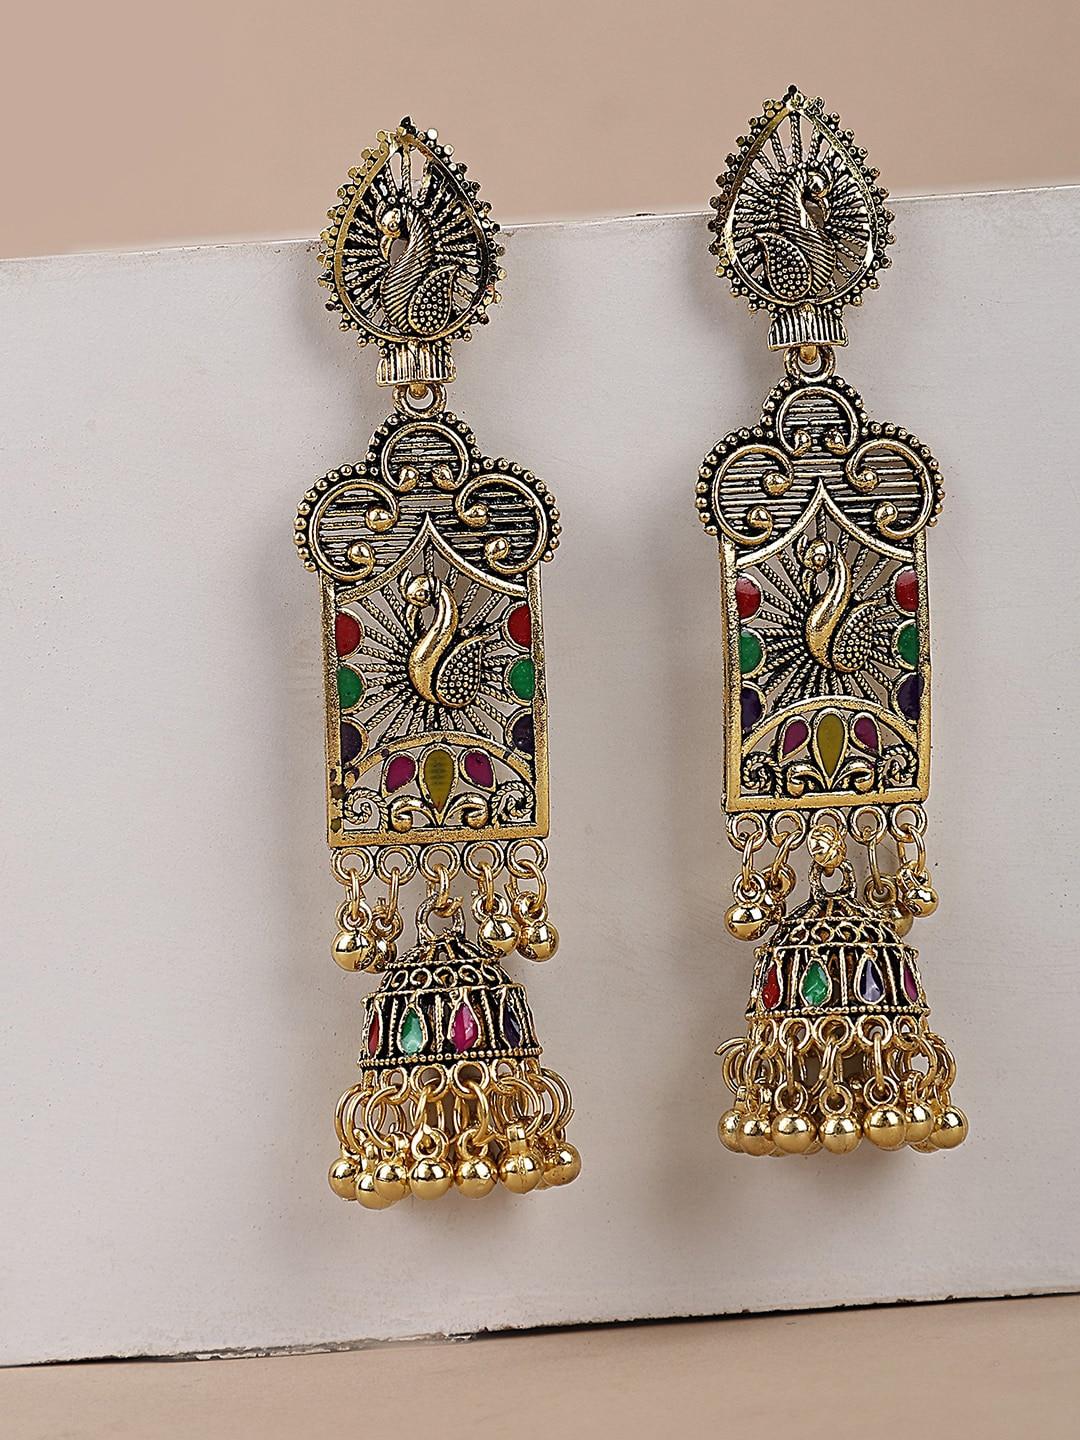 anikas creation multicoloured contemporary jhumkas earrings